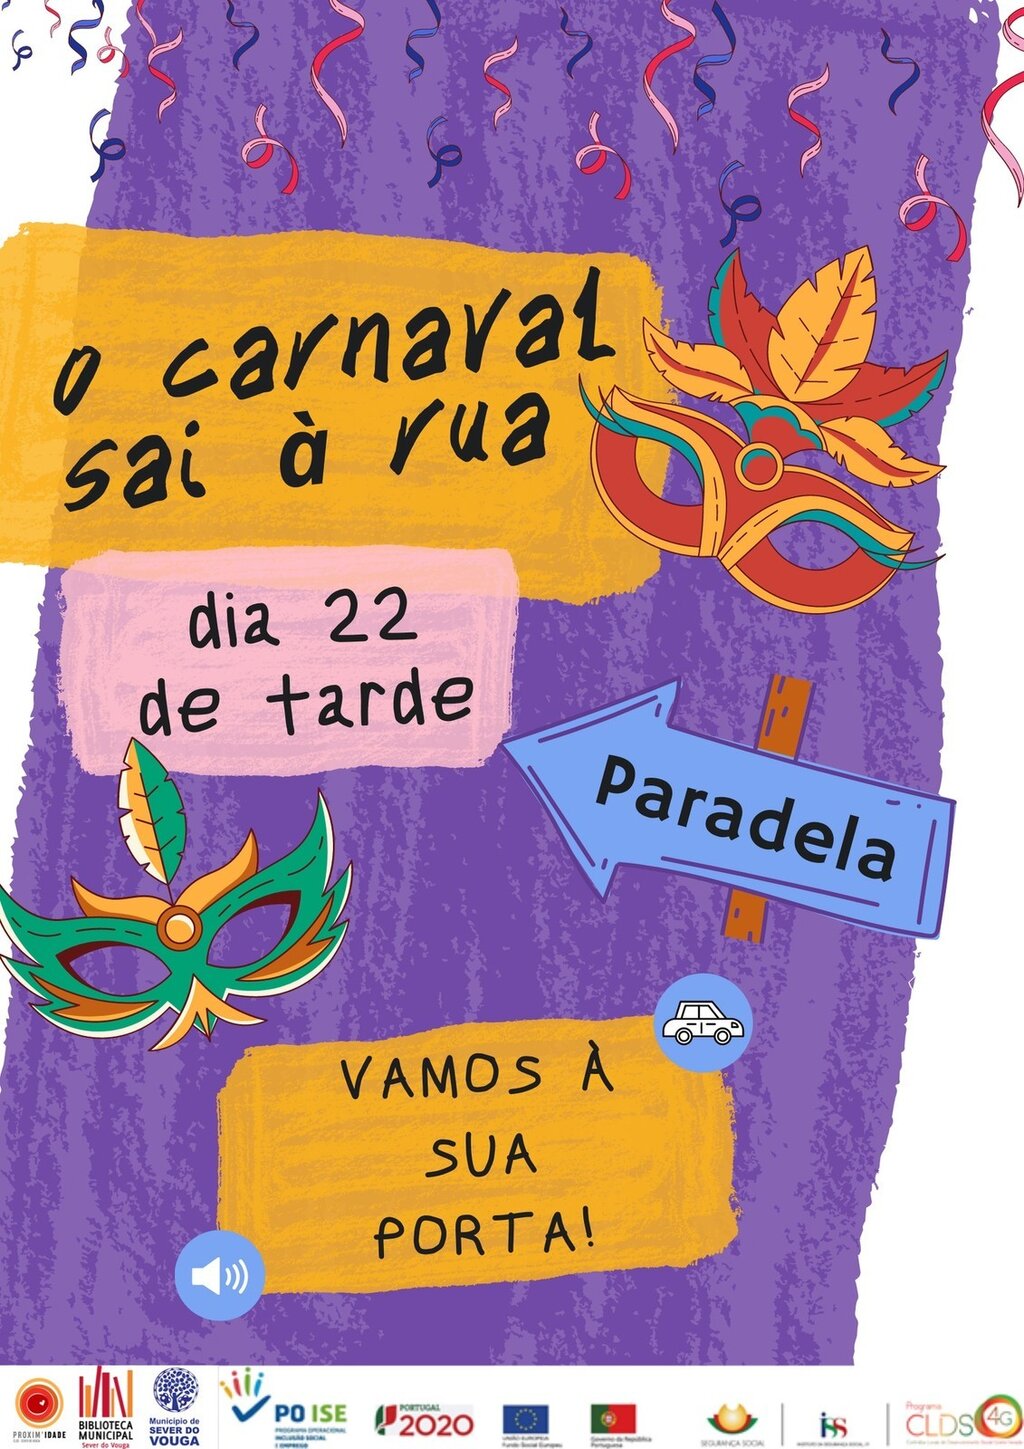 22 fev - o carnaval sai à rua - Paradela